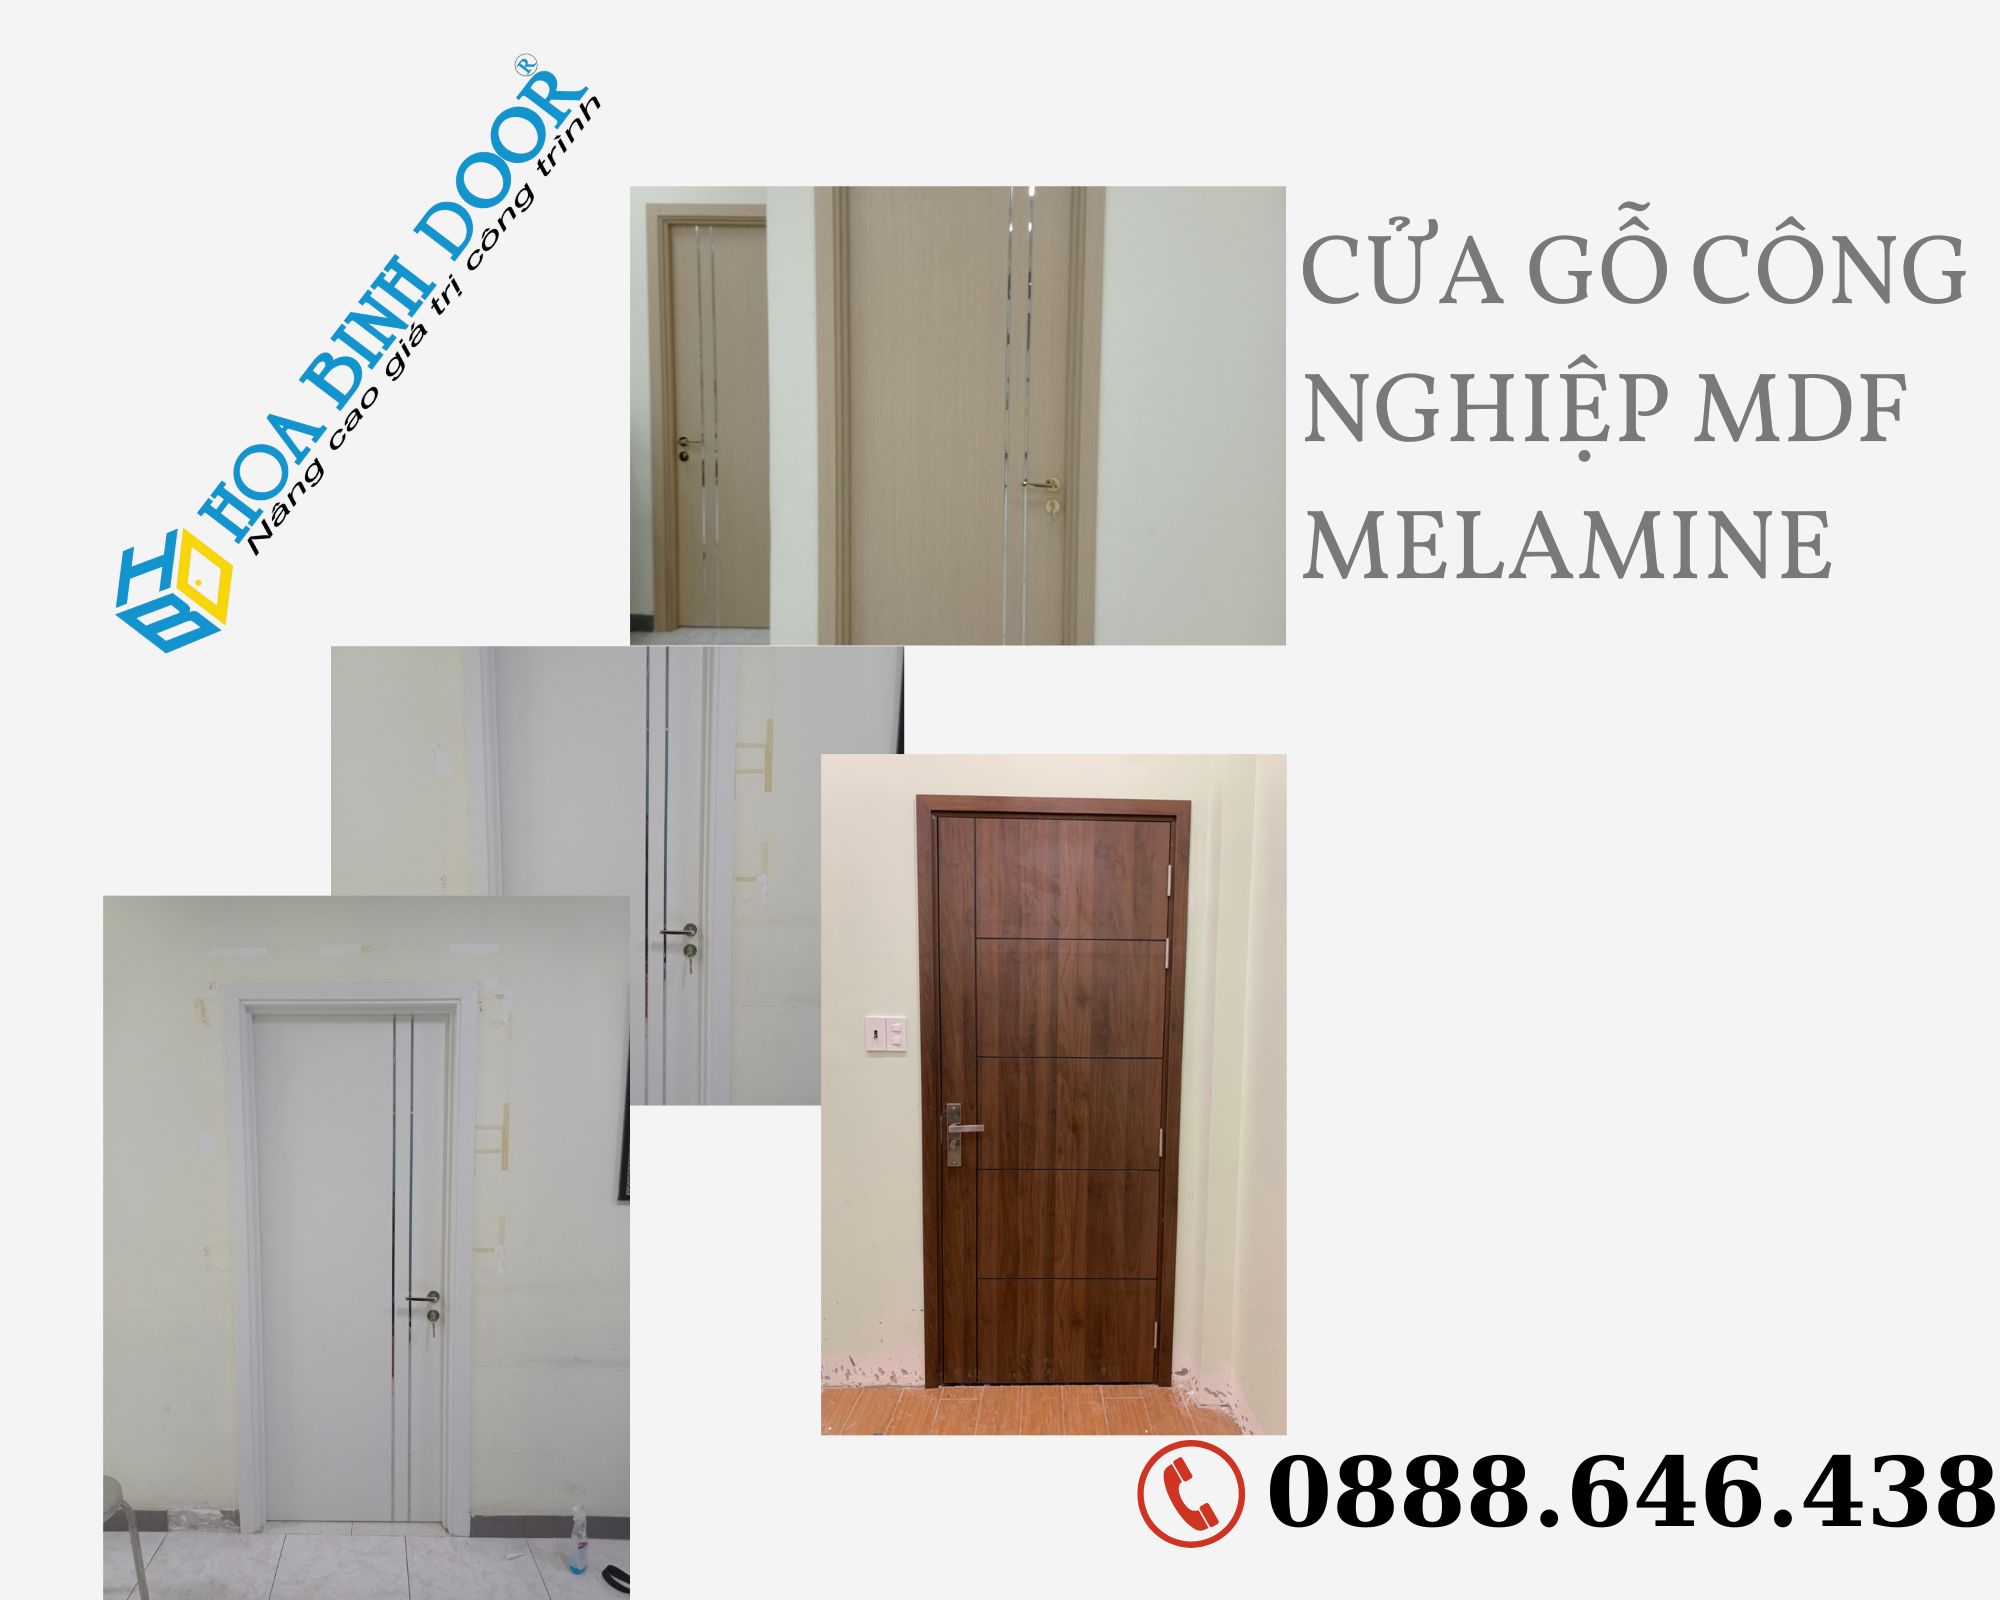 cửa gỗ công nghiệp mdf melamine giá rẻ chất lượng tốt